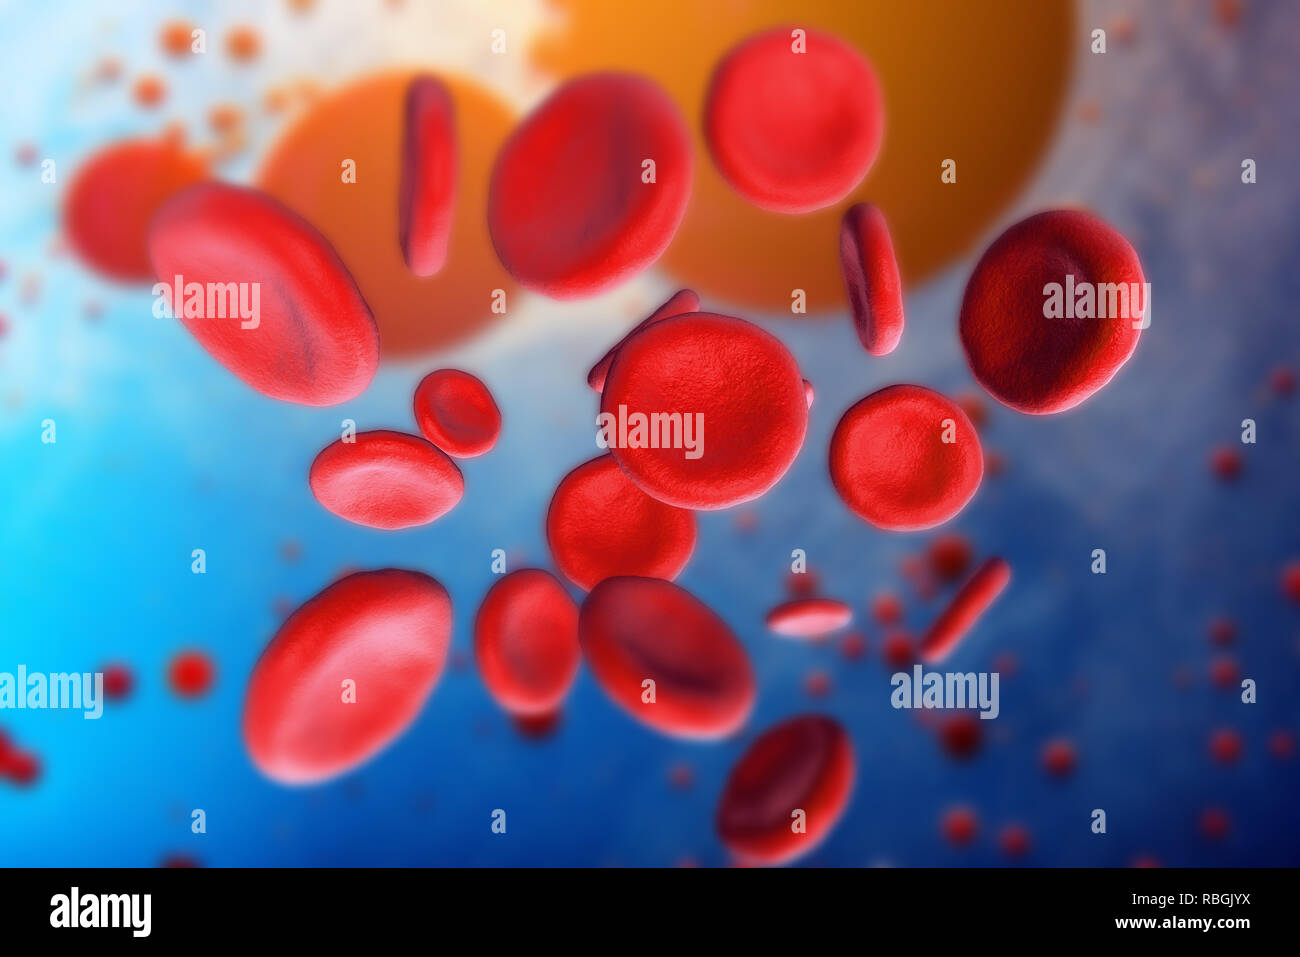 3d-Abbildung der roten Blutkörperchen Erythrozyten close-up unter dem  Mikroskop. Hintergrund für wissenschaftliche medizinische Konzept  Stockfotografie - Alamy